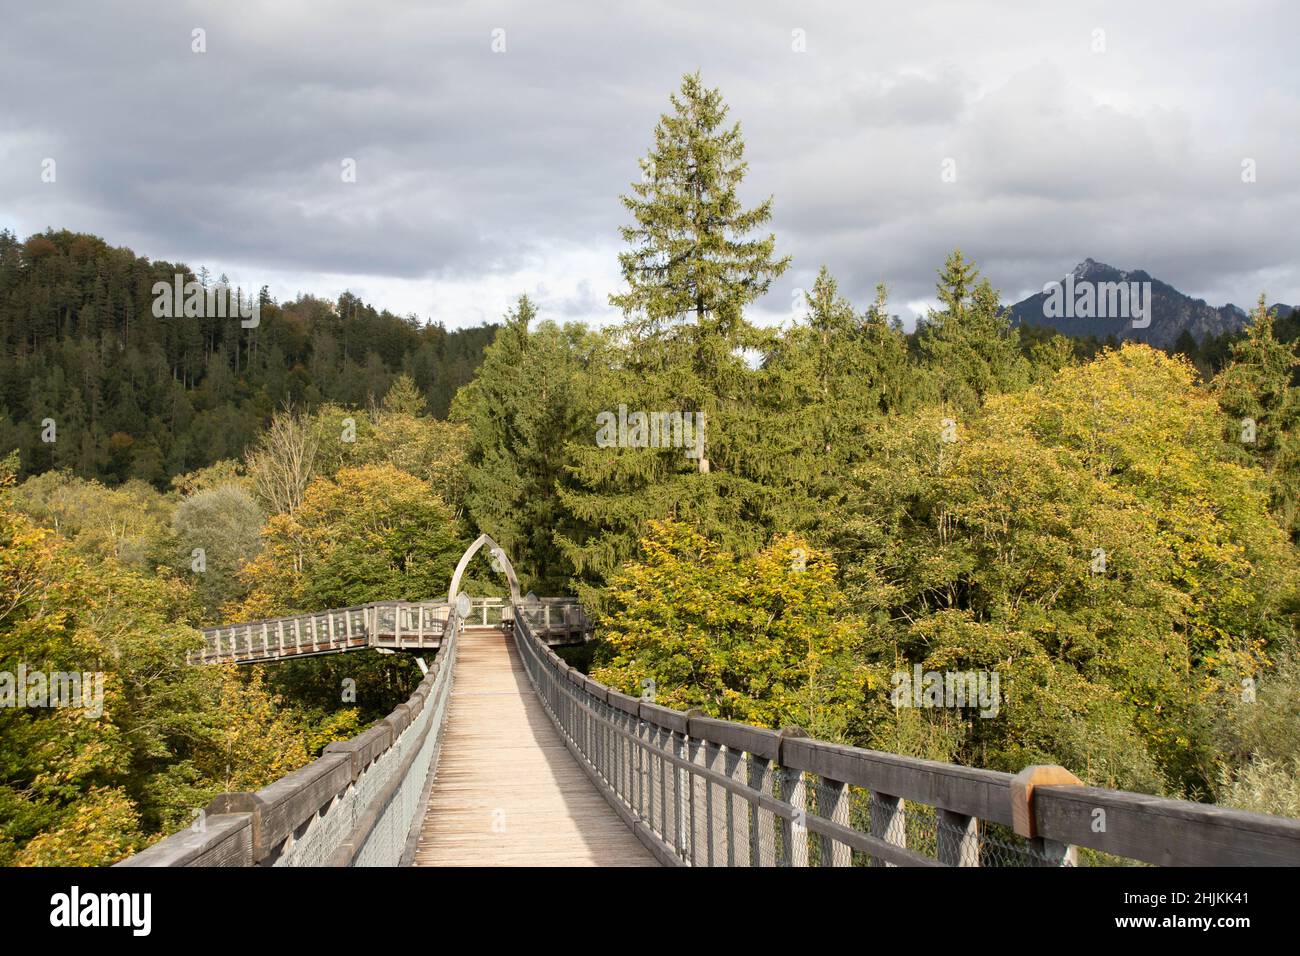 Der Baumkronenweg ist ein Pfad über Hängebrücken im Walderlebniszentrum Füssen-Ziegelwies. Er ist 480 Meter lang und in einer Höhe von 21 Metern. Stock Photo